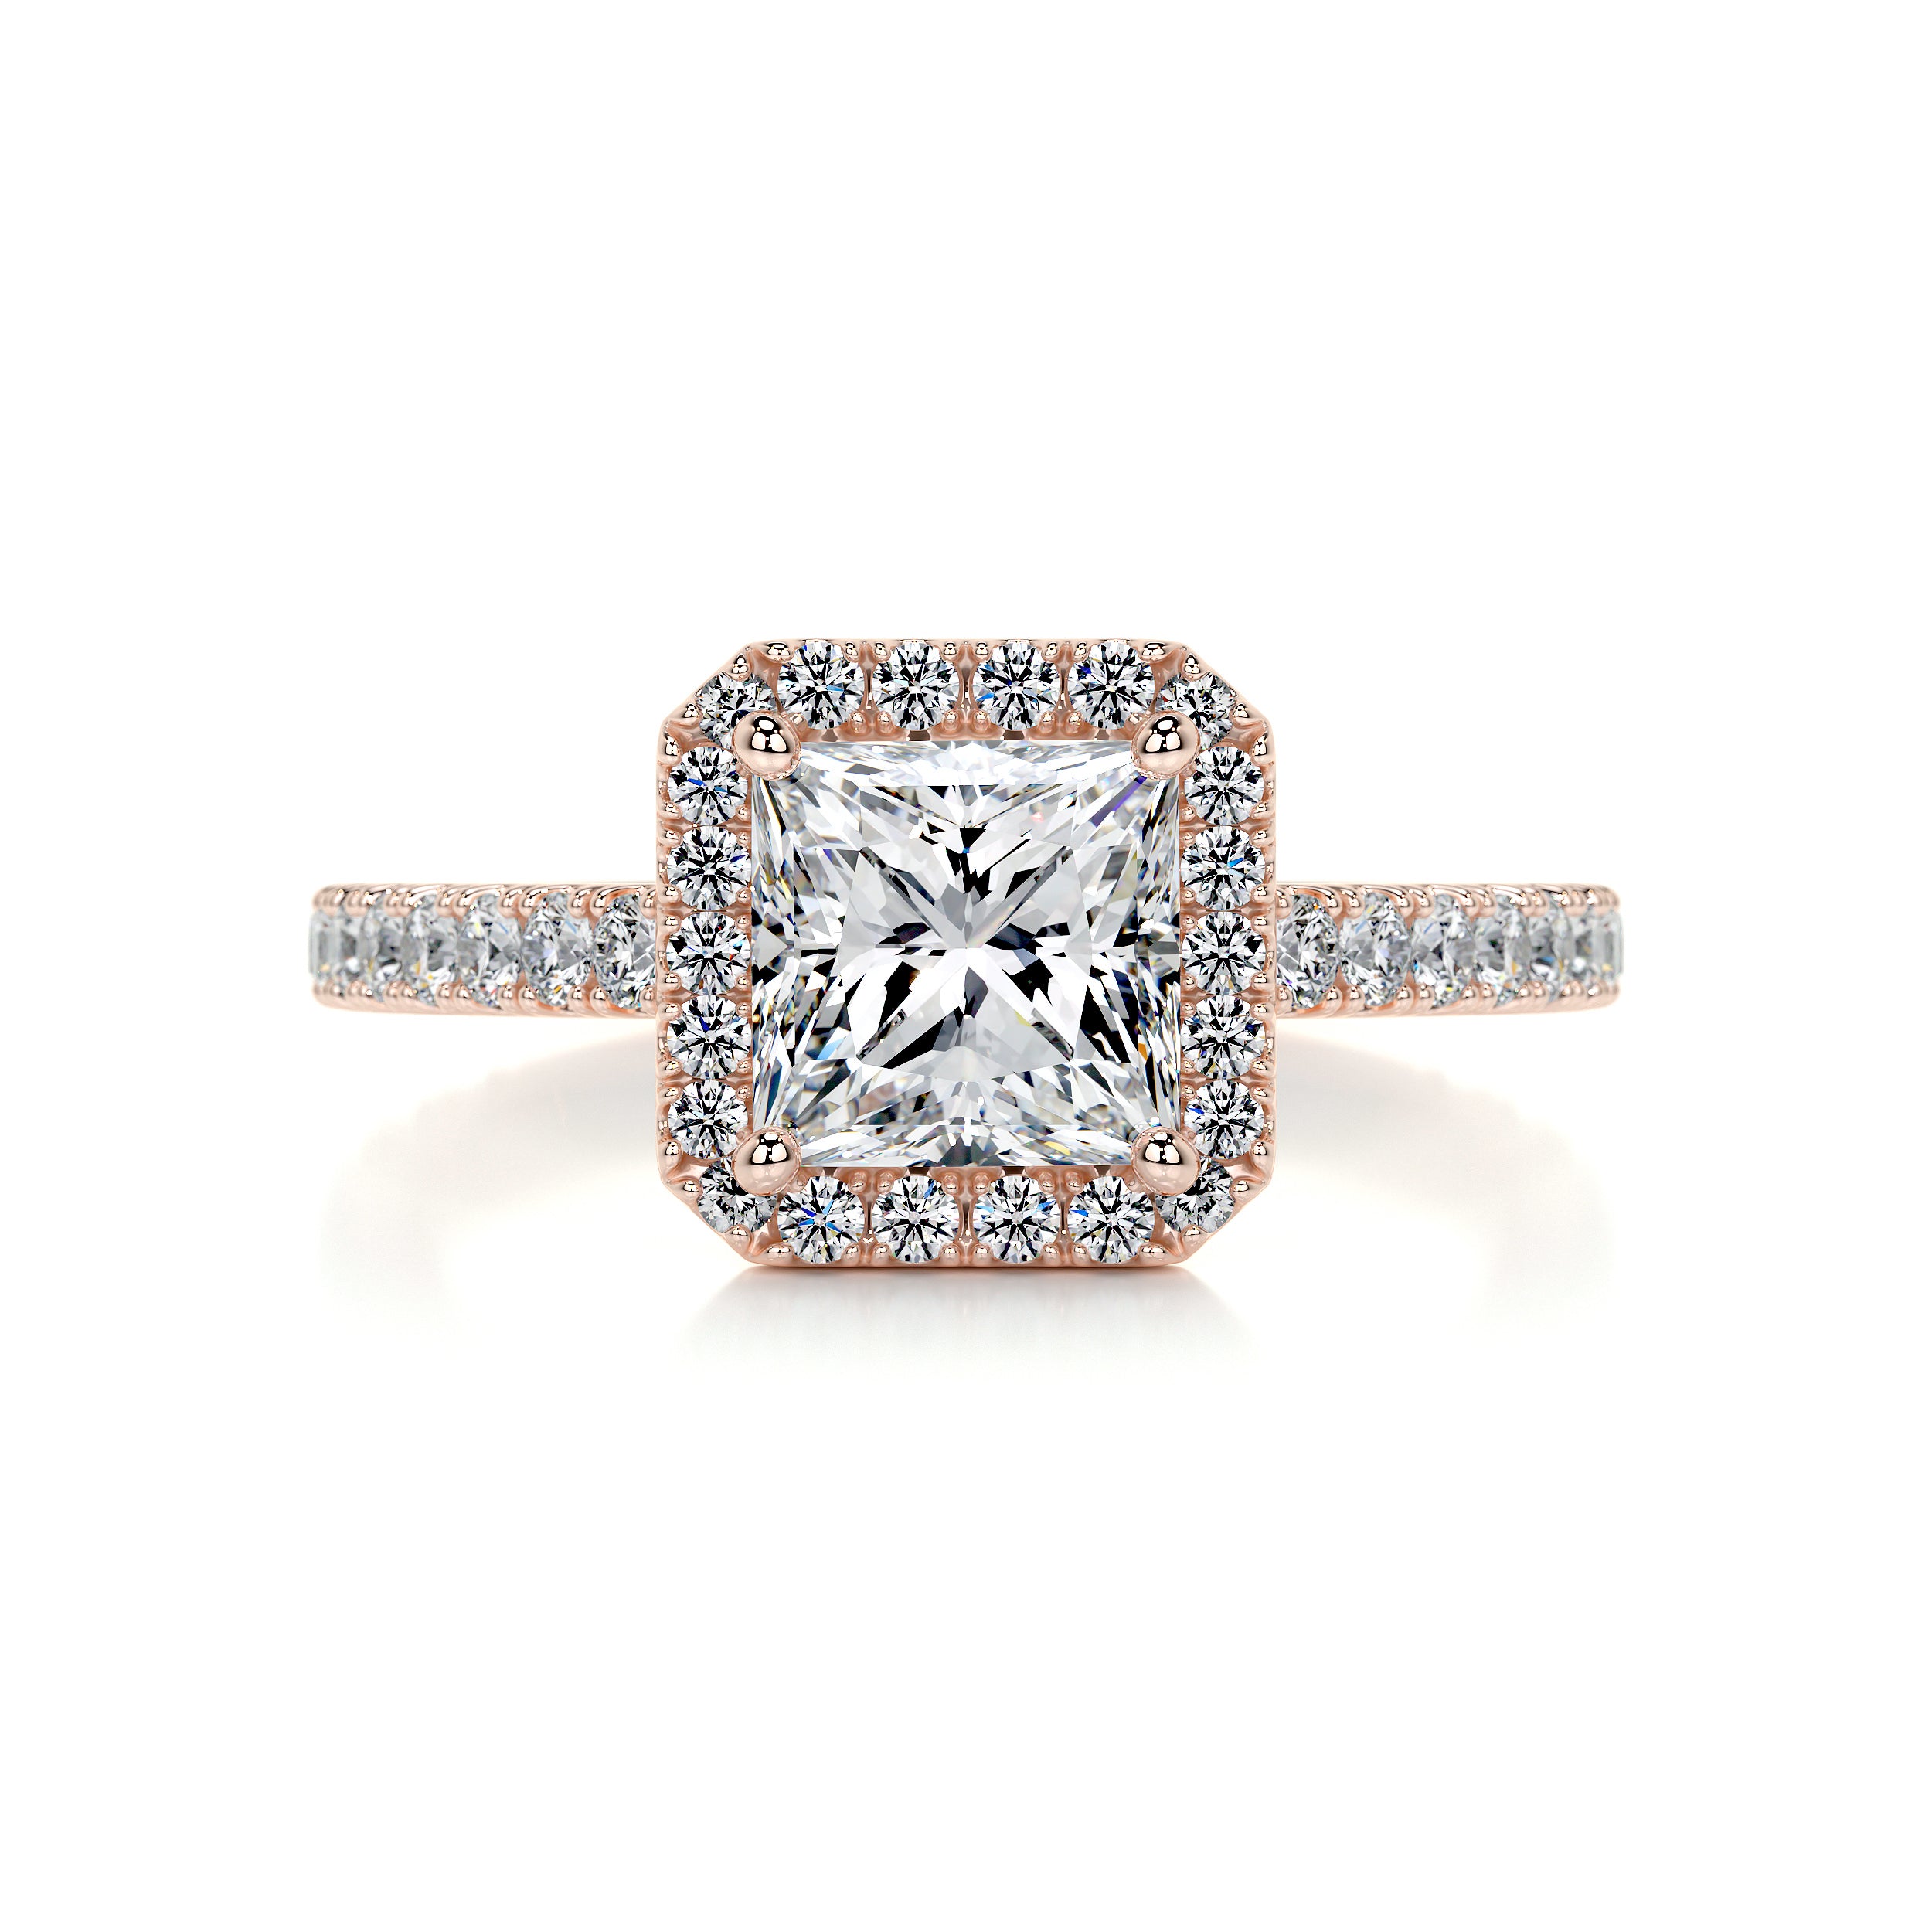 Selena Diamond Engagement Ring   (1.5 Carat) -14K Rose Gold